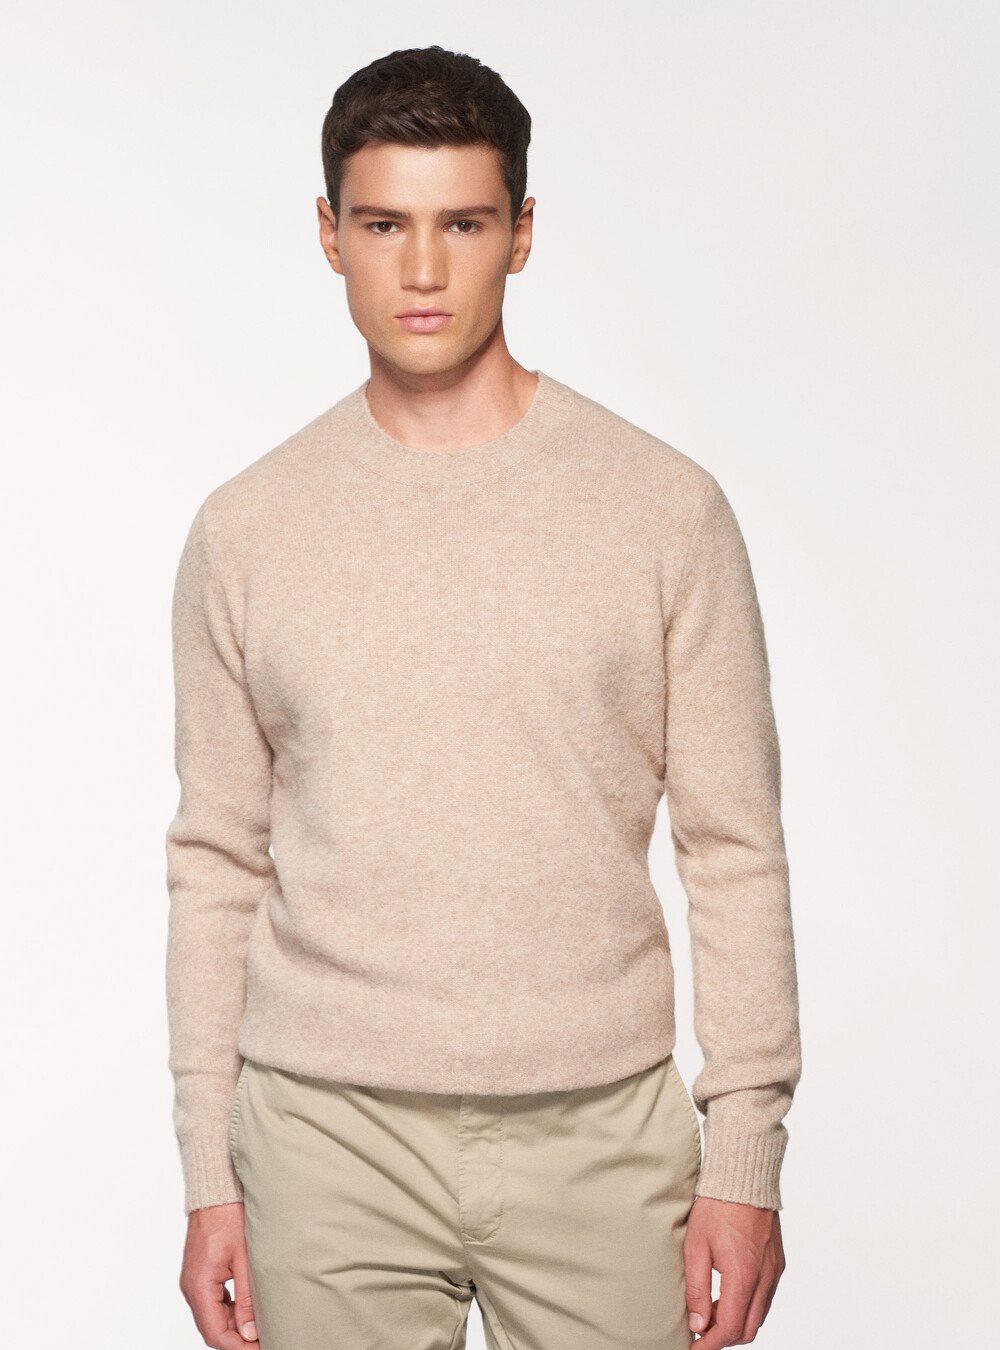 Brushed wool blend crew-neck sweater, GutteridgeEU